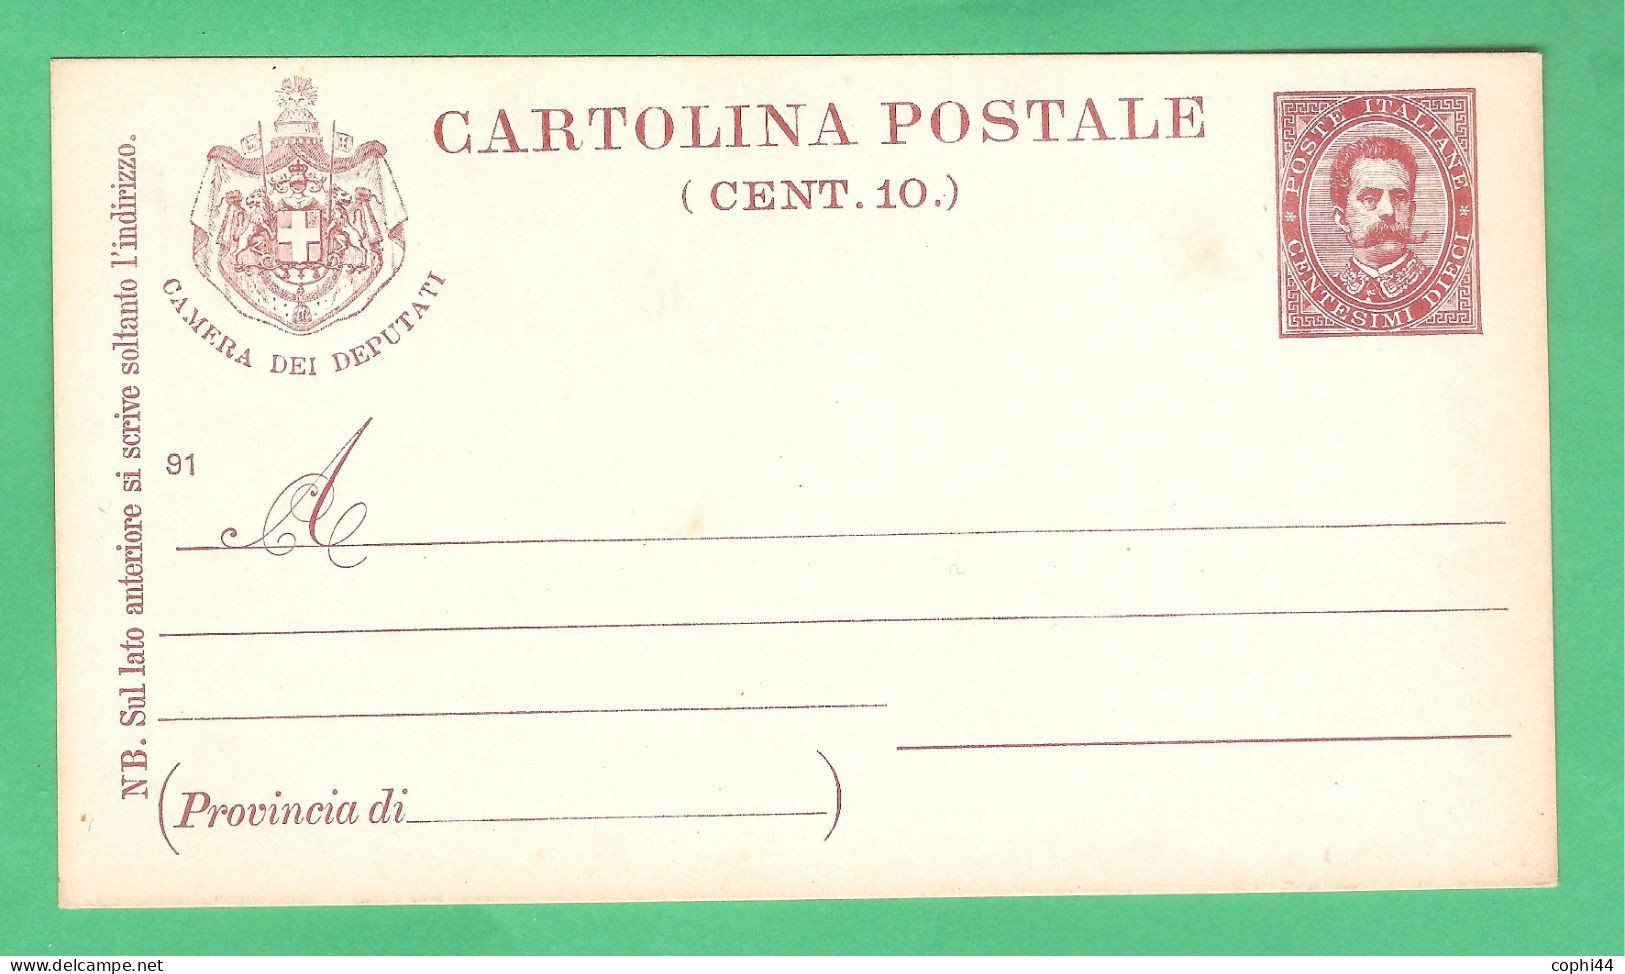 REGNO D'ITALIA 1891 CARTOLINA POSTALE PER DEPUTATI UMBERTO I MIL. 91 STEMMA CON BANDIERE (FILAGRANO S4) NUOVA - Interi Postali